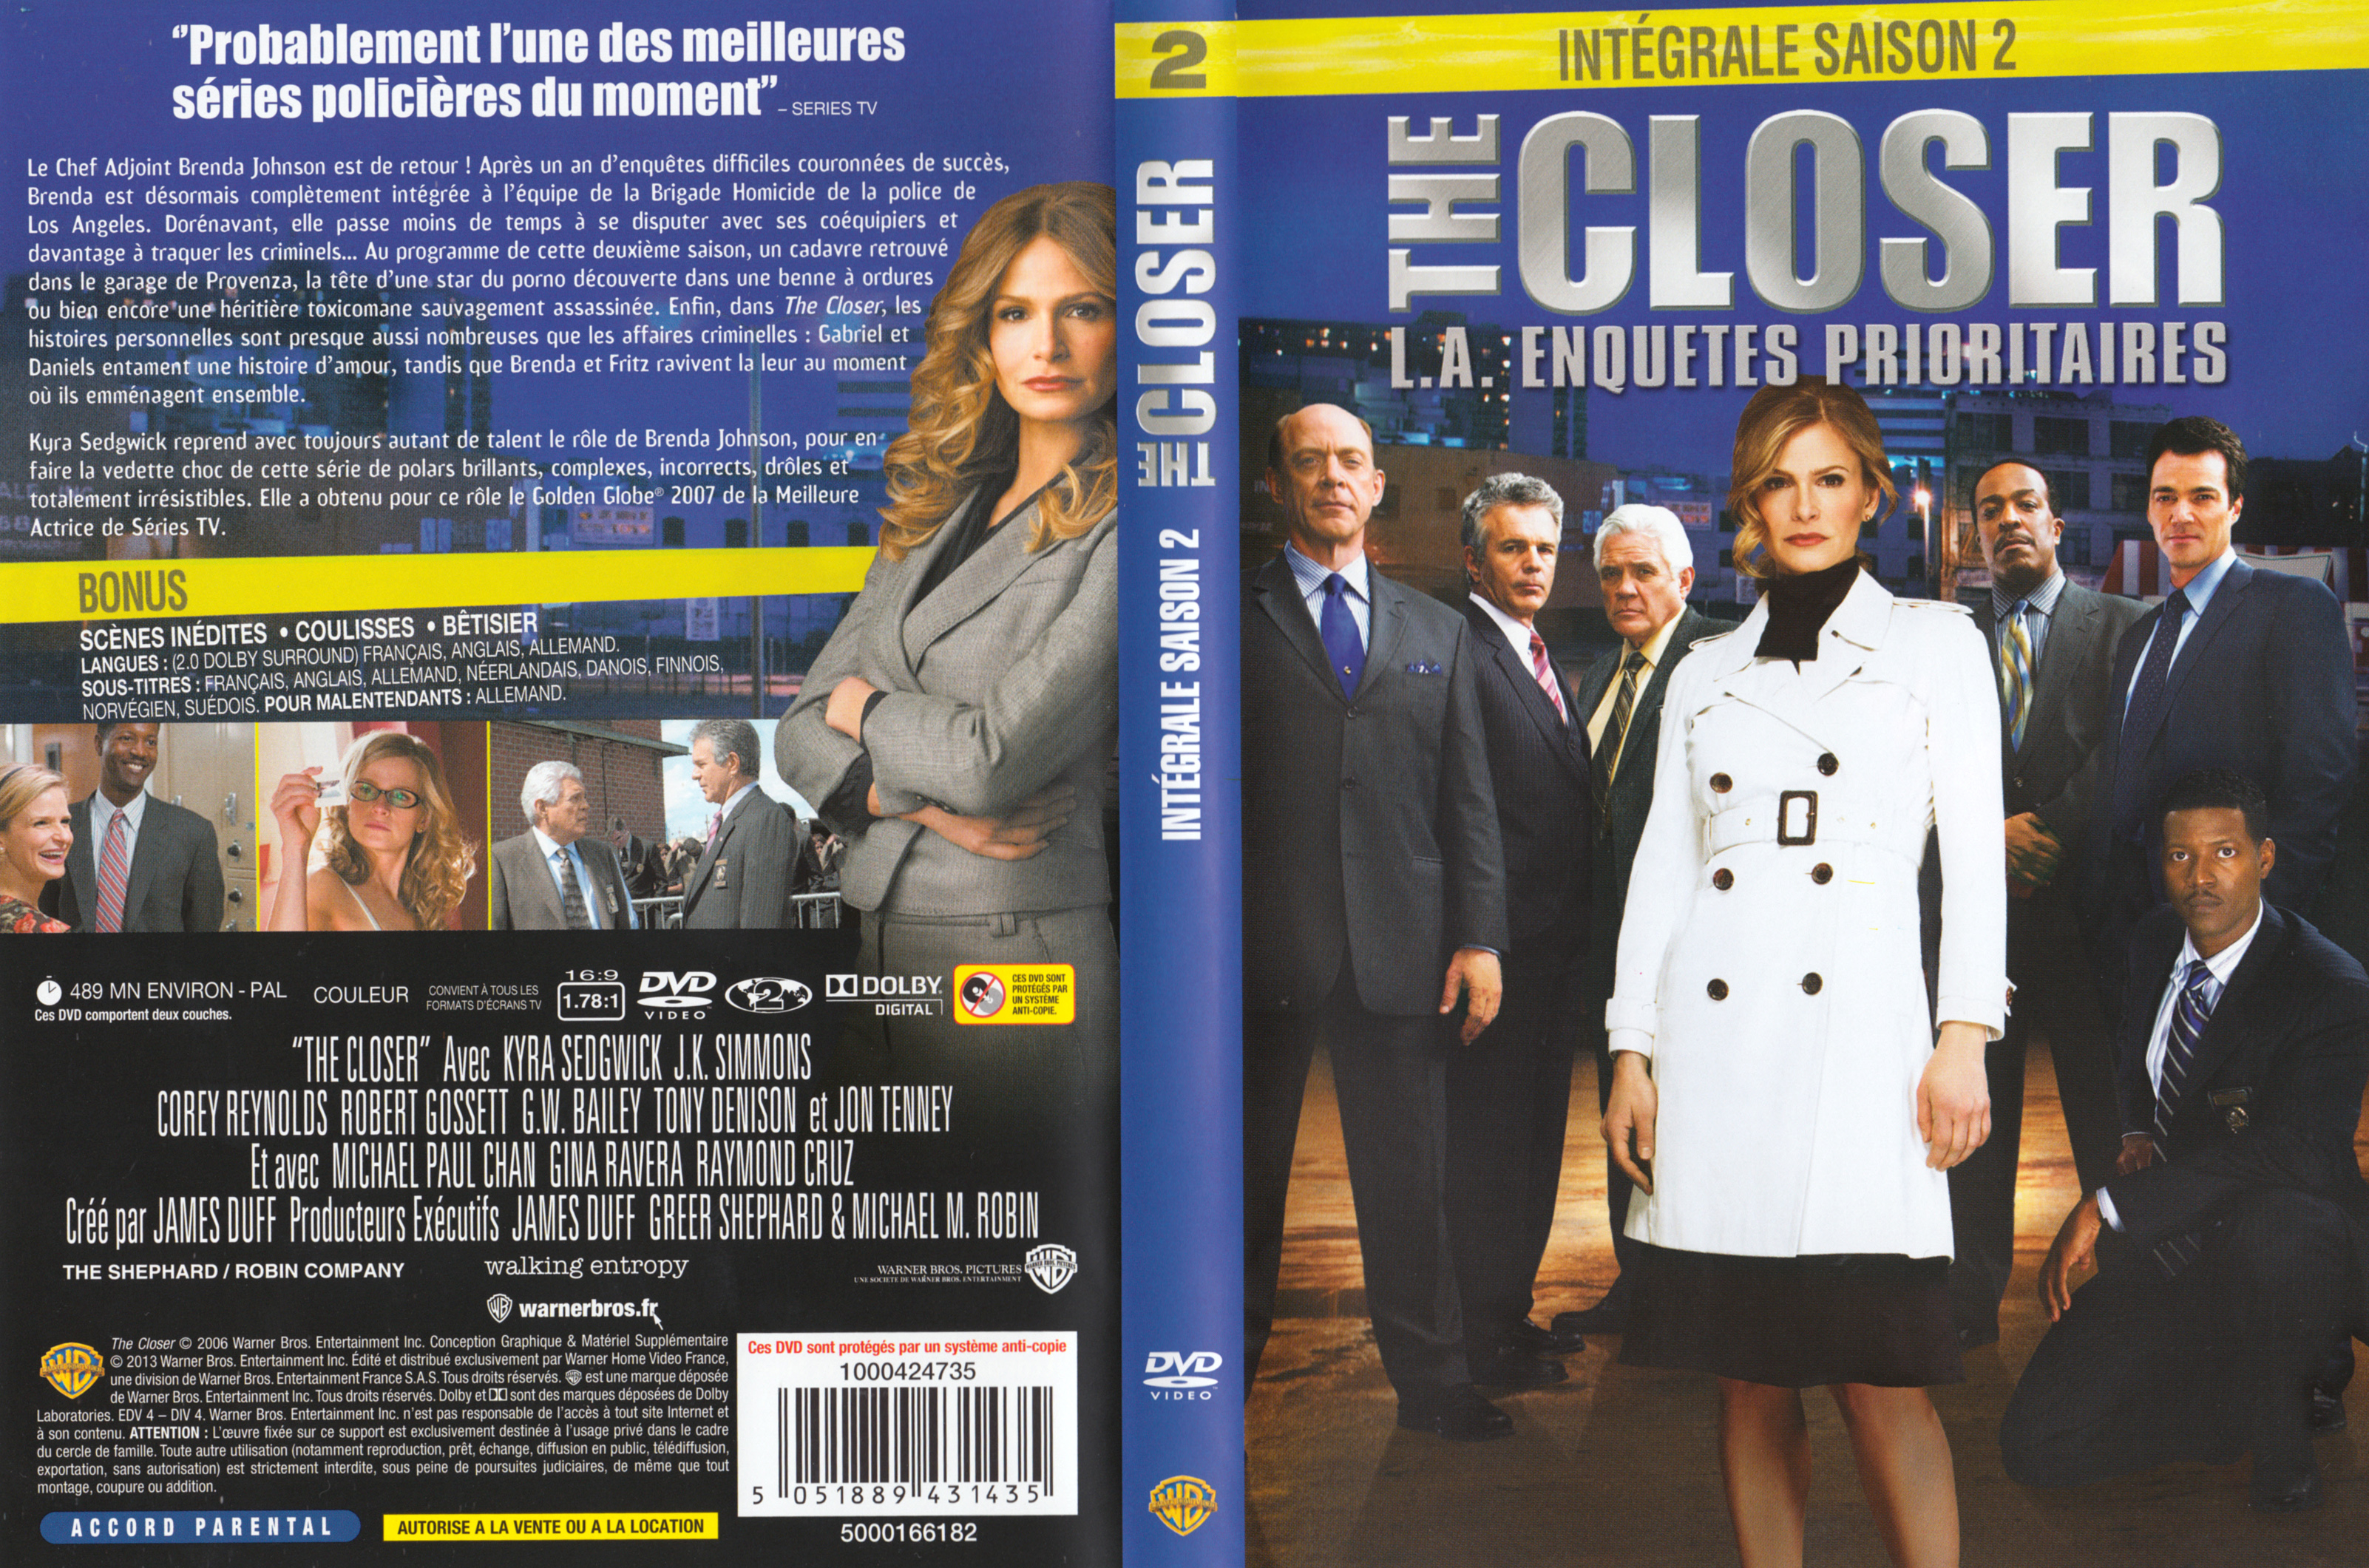 Jaquette DVD The Closer Saison 2